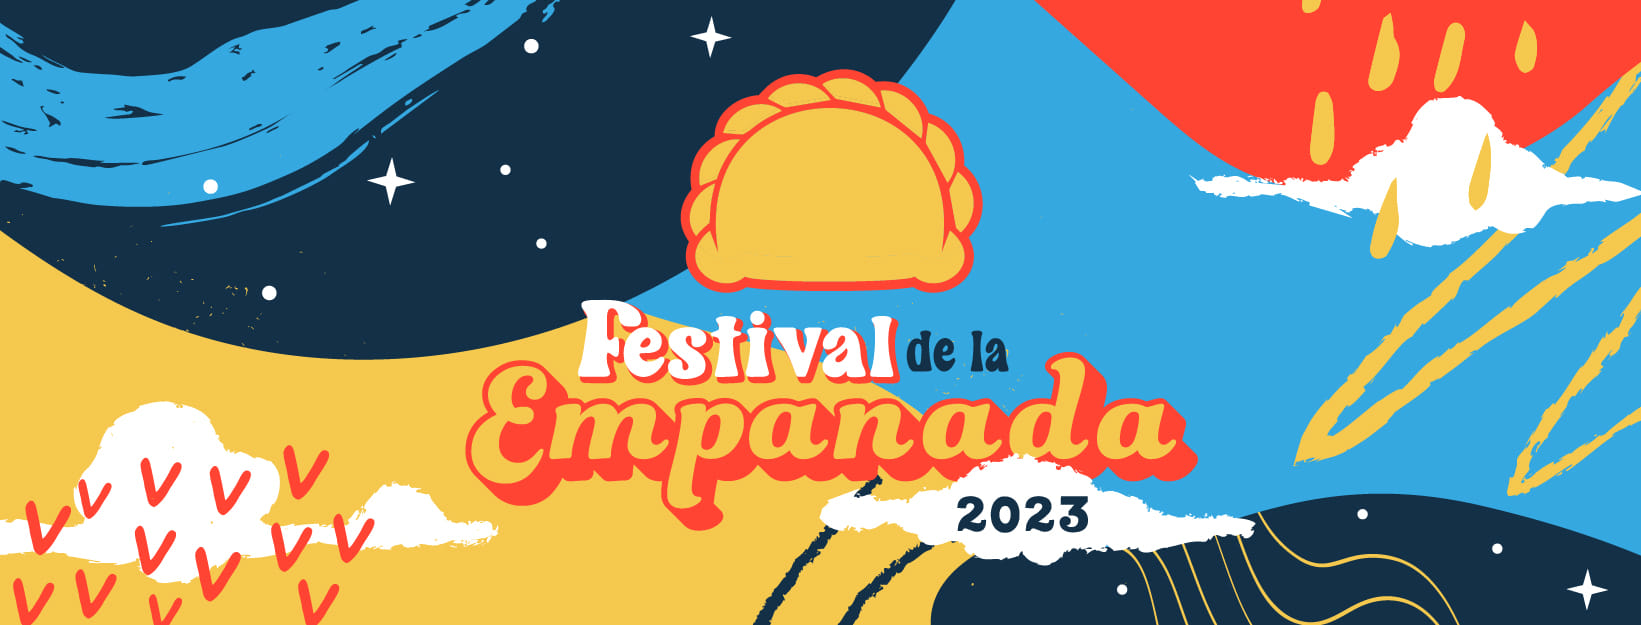 Empanada Festival 2023 van start